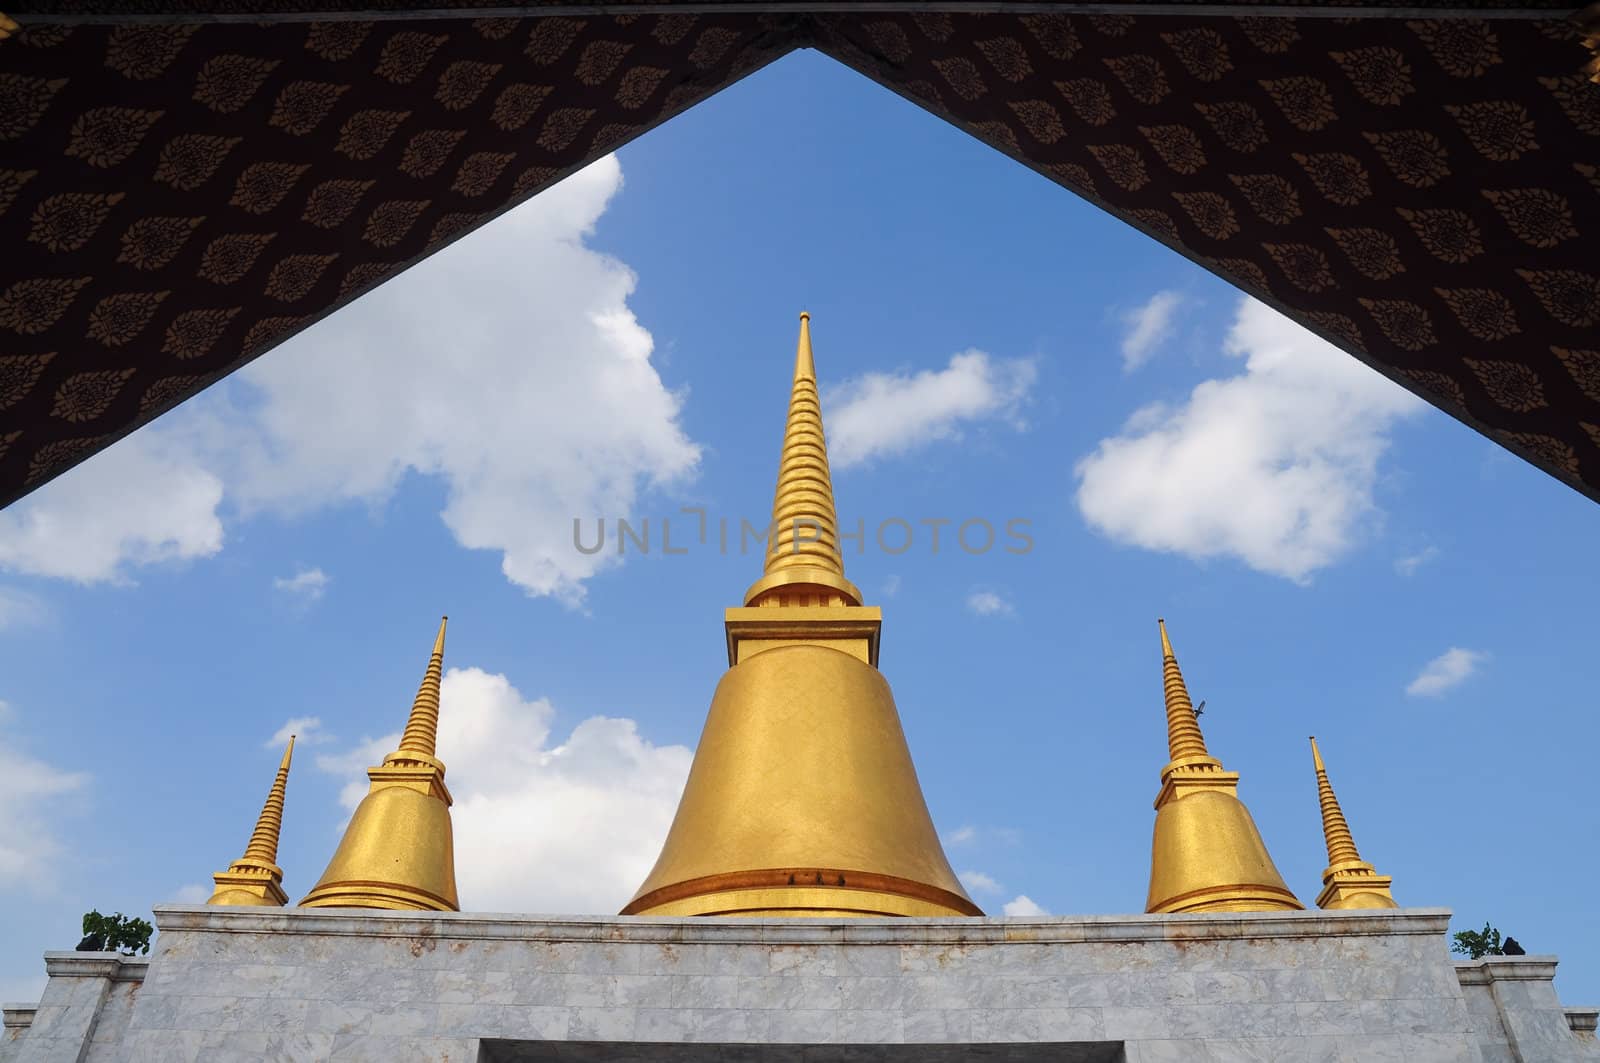 Golden stupa in blue sky by ekawatchaow